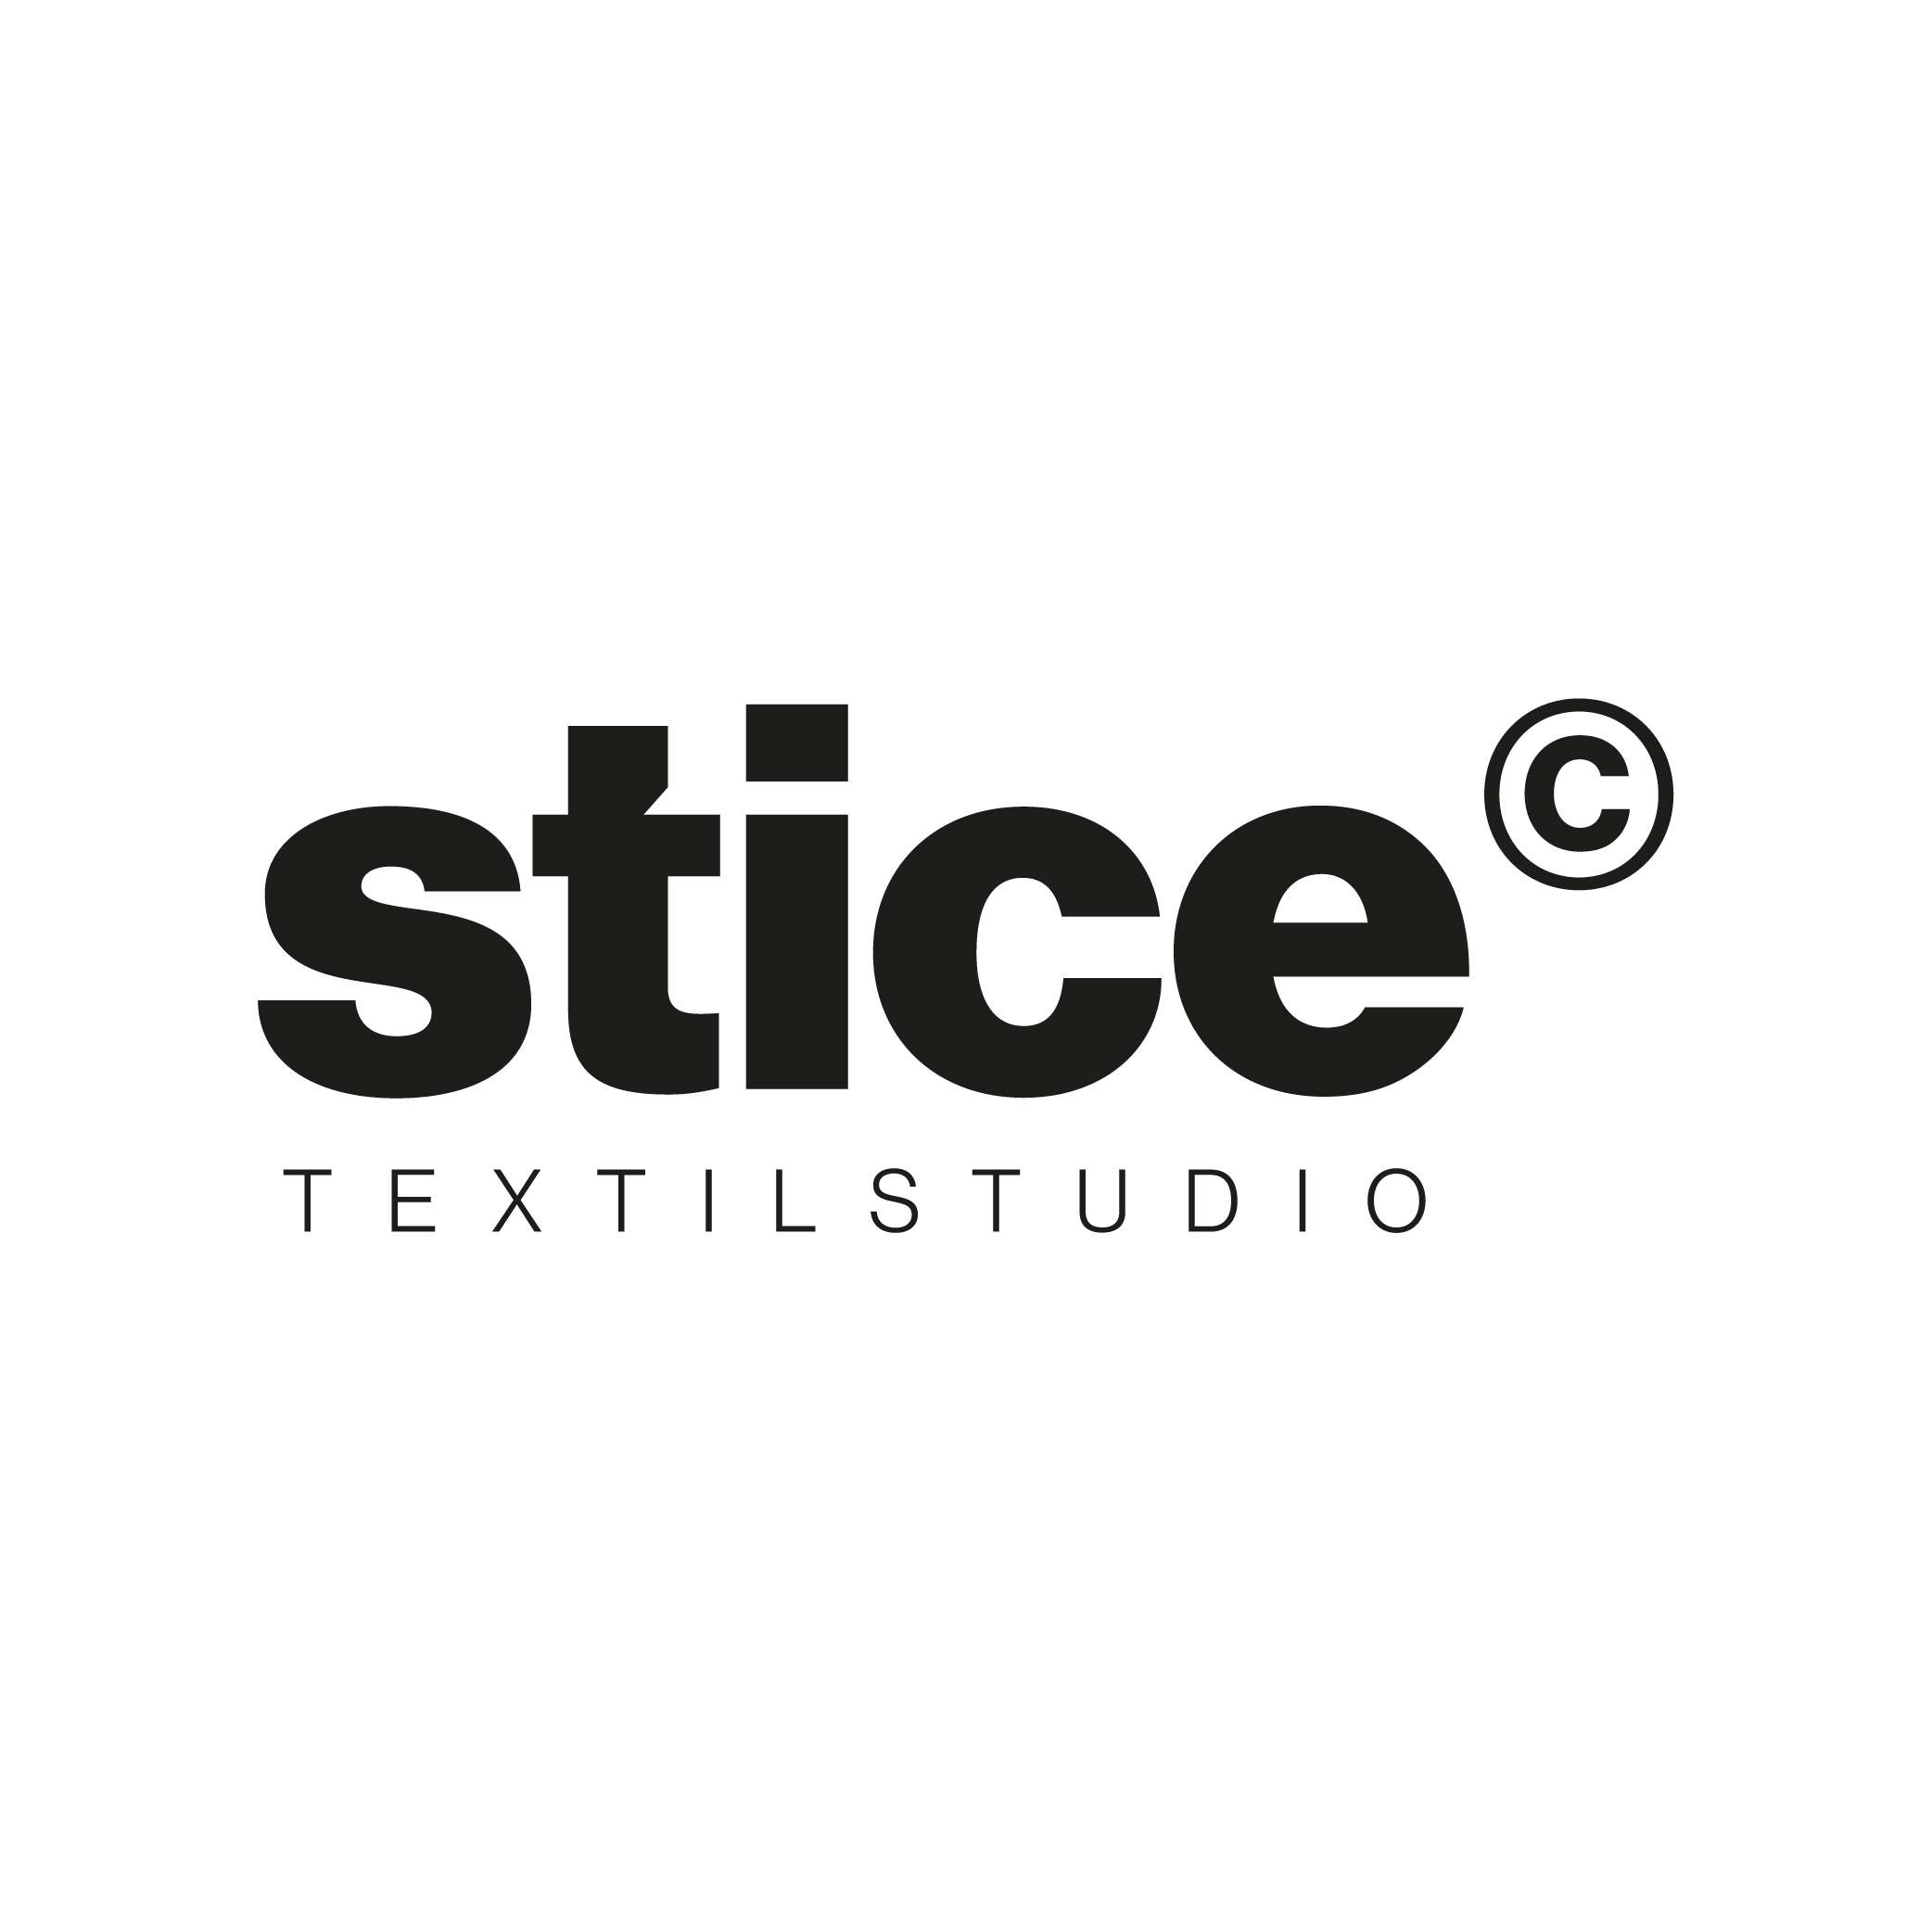 Logo Stice Textilstudio